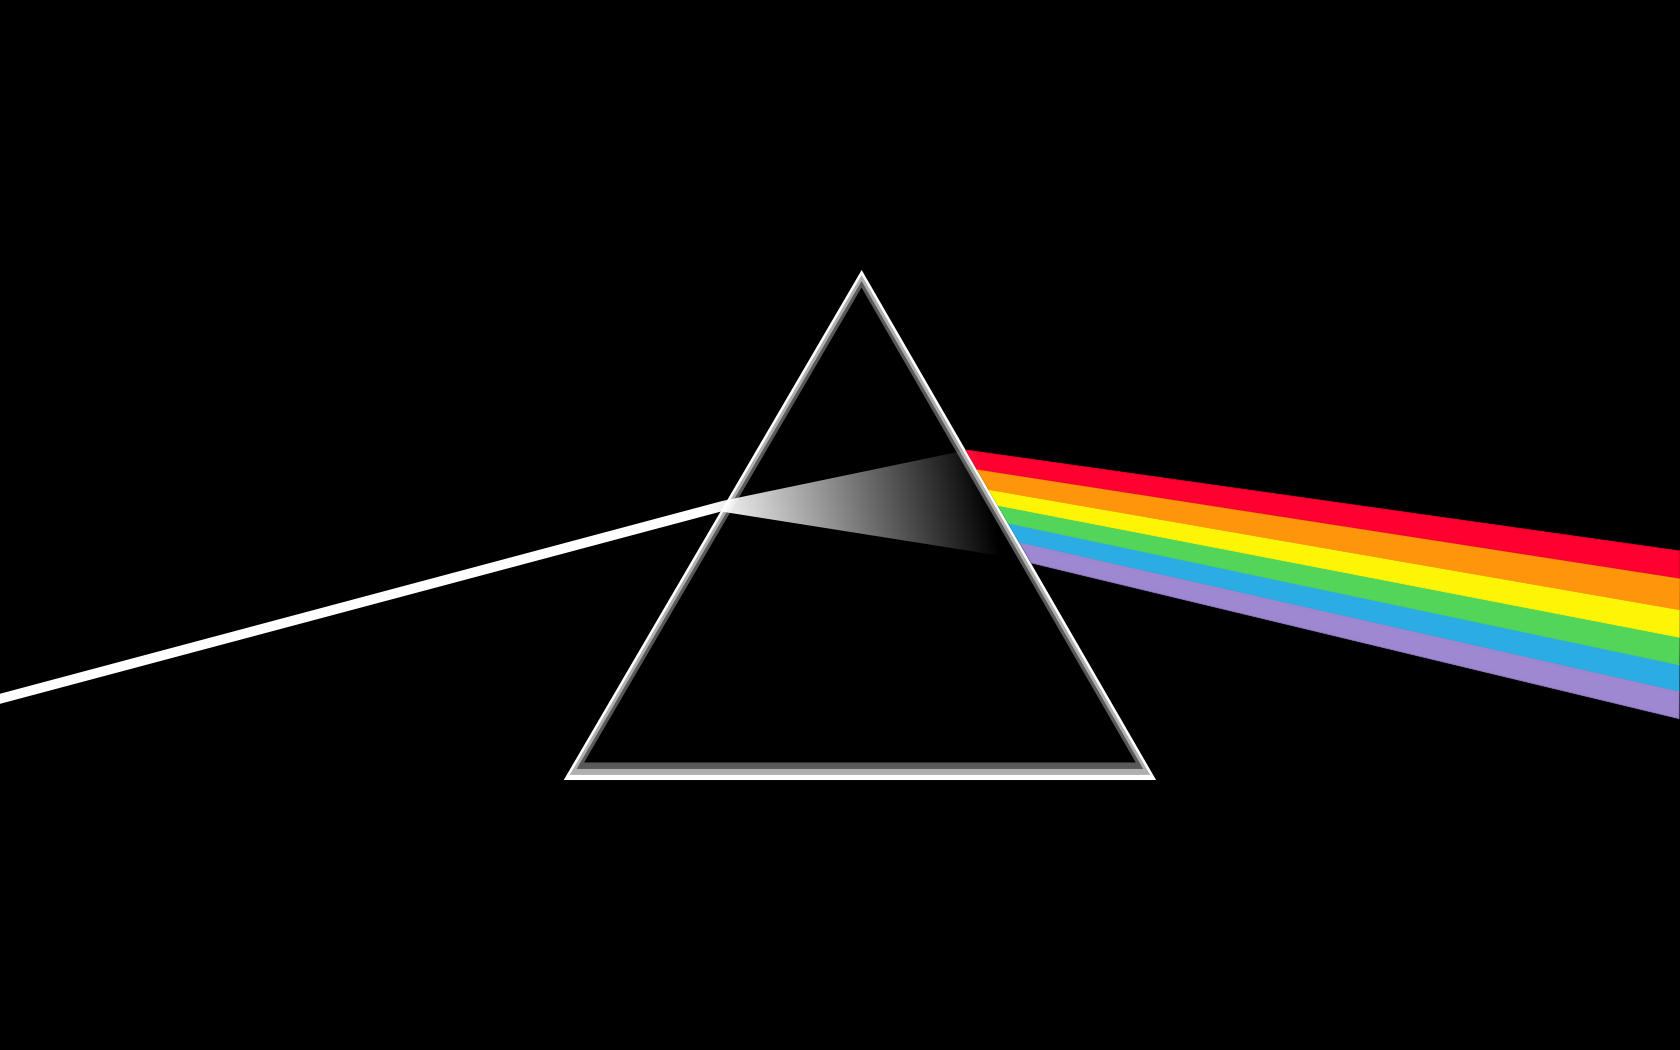 Η Εθνική Συμφωνική Ορχήστρα και Χορωδία της ΕΡΤ παρουσιάζουν το The Dark Side of the Moon των Pink Floyd